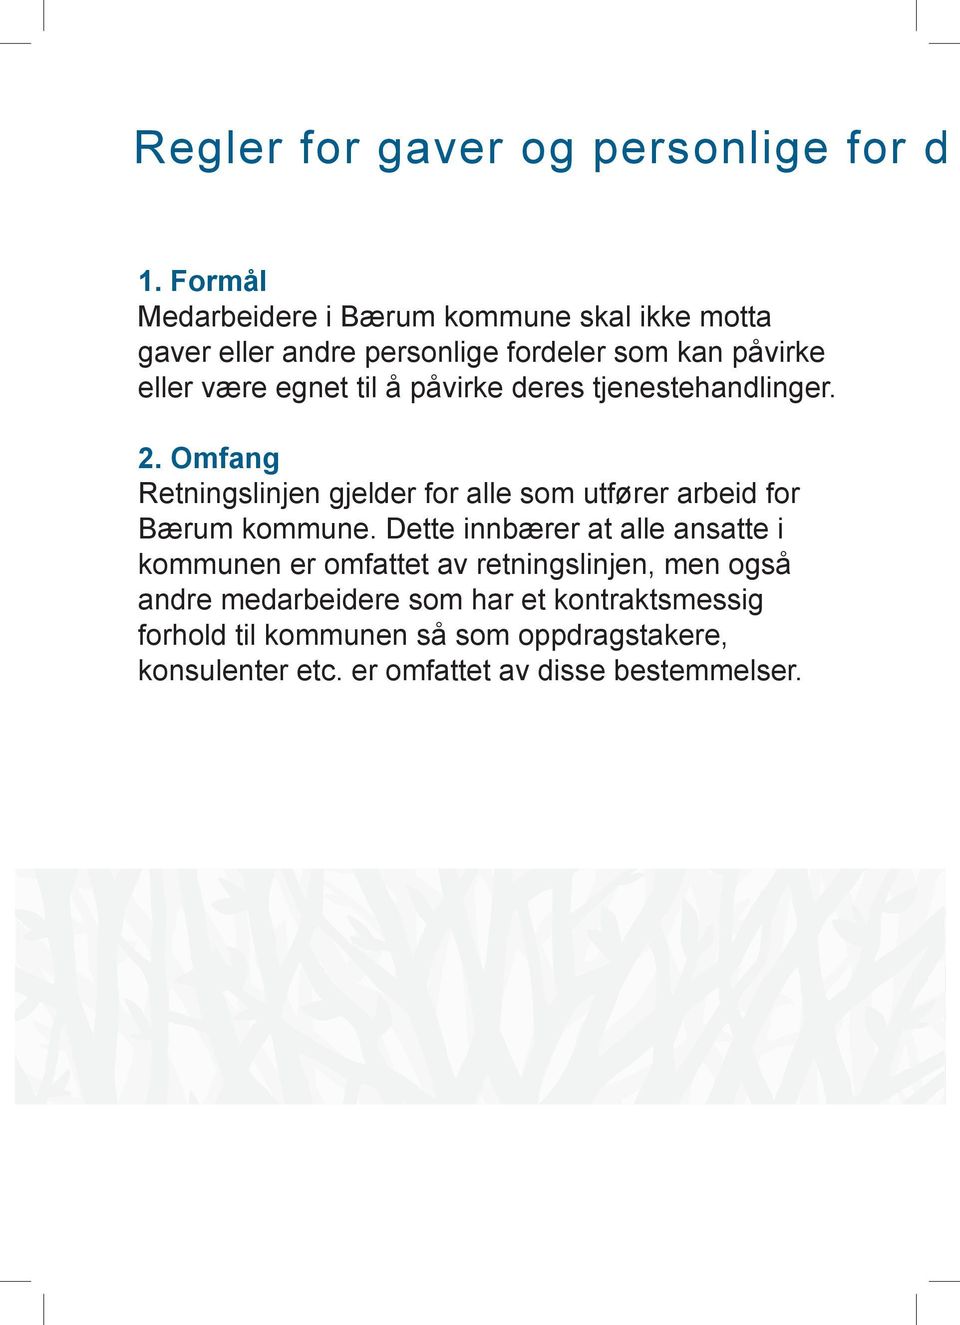 å påvirke deres tjenestehandlinger. 2. Omfang Retningslinjen gjelder for alle som utfører arbeid for Bærum kommune.